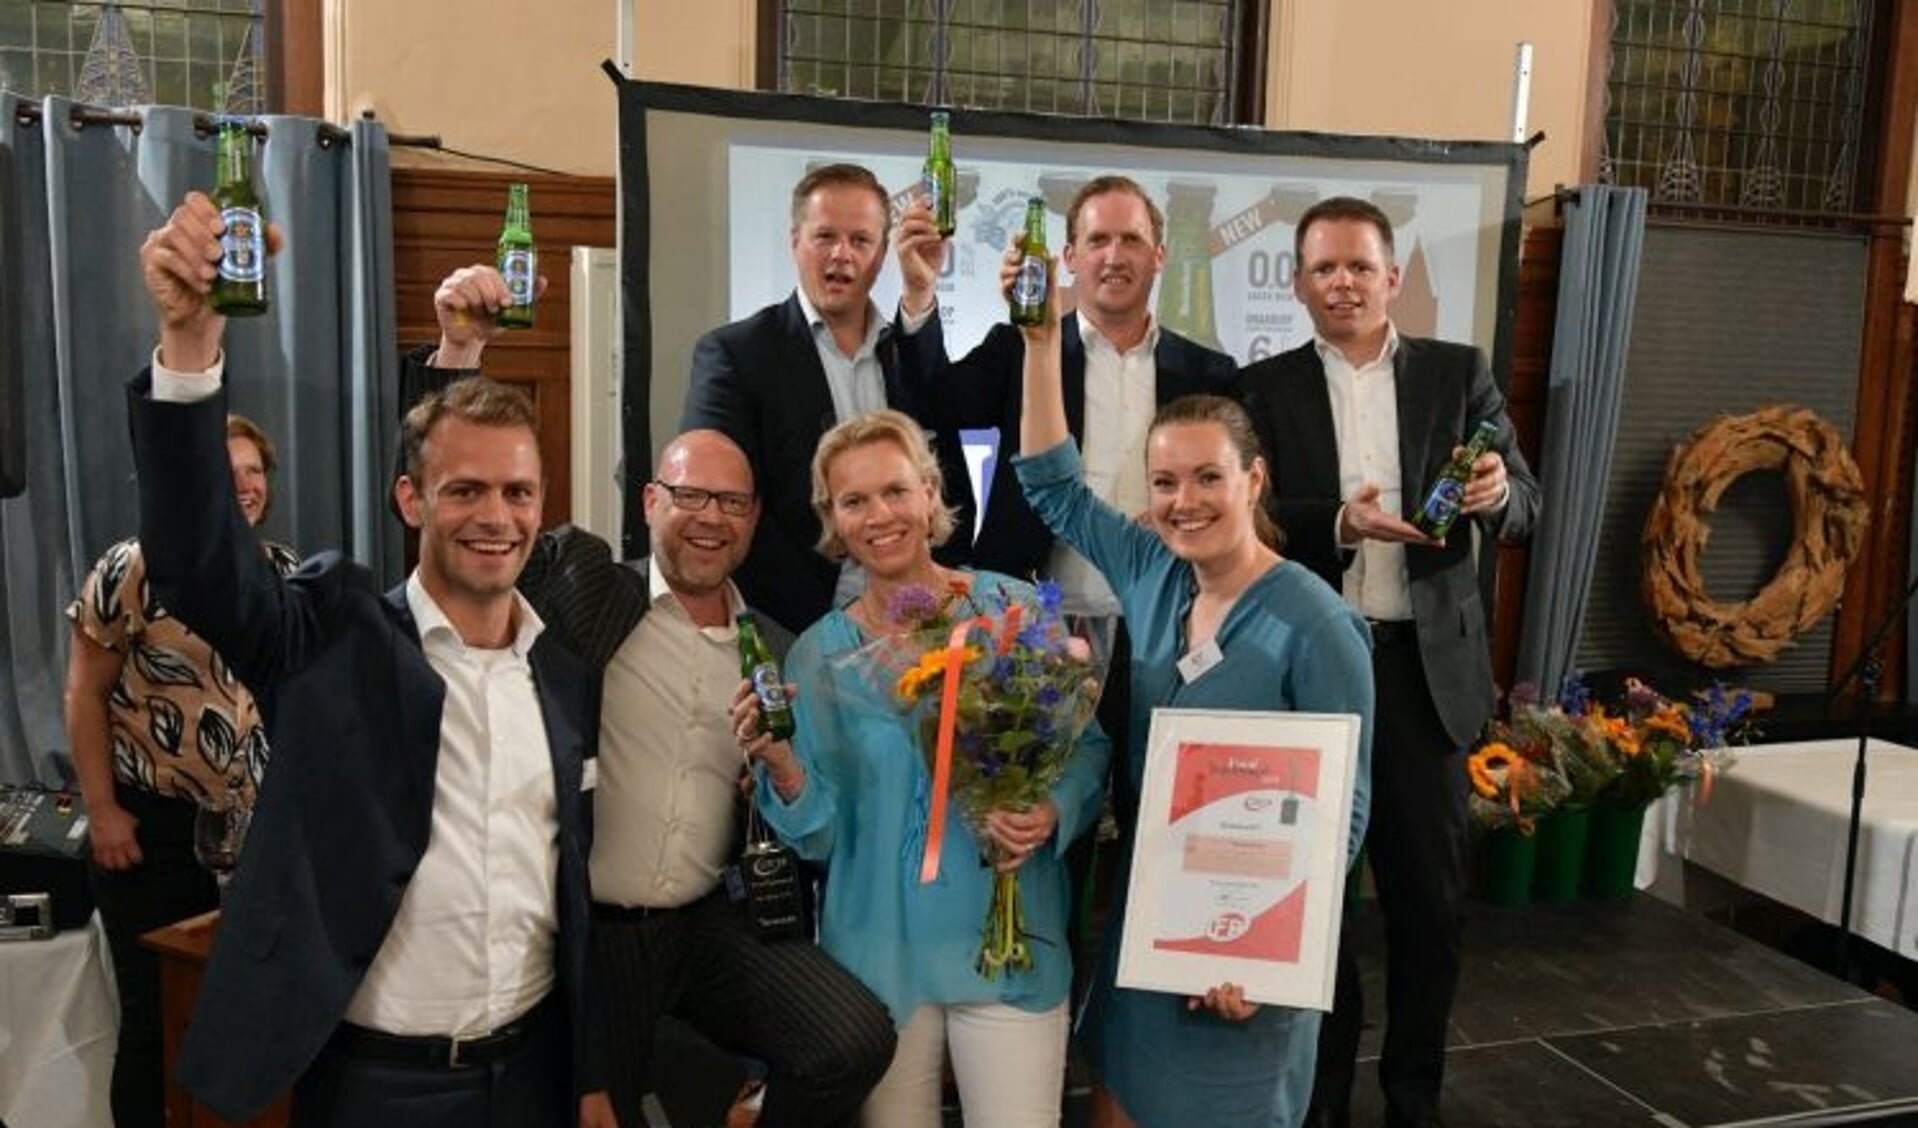 FoodAwards 2018: Heineken 0.0 wint